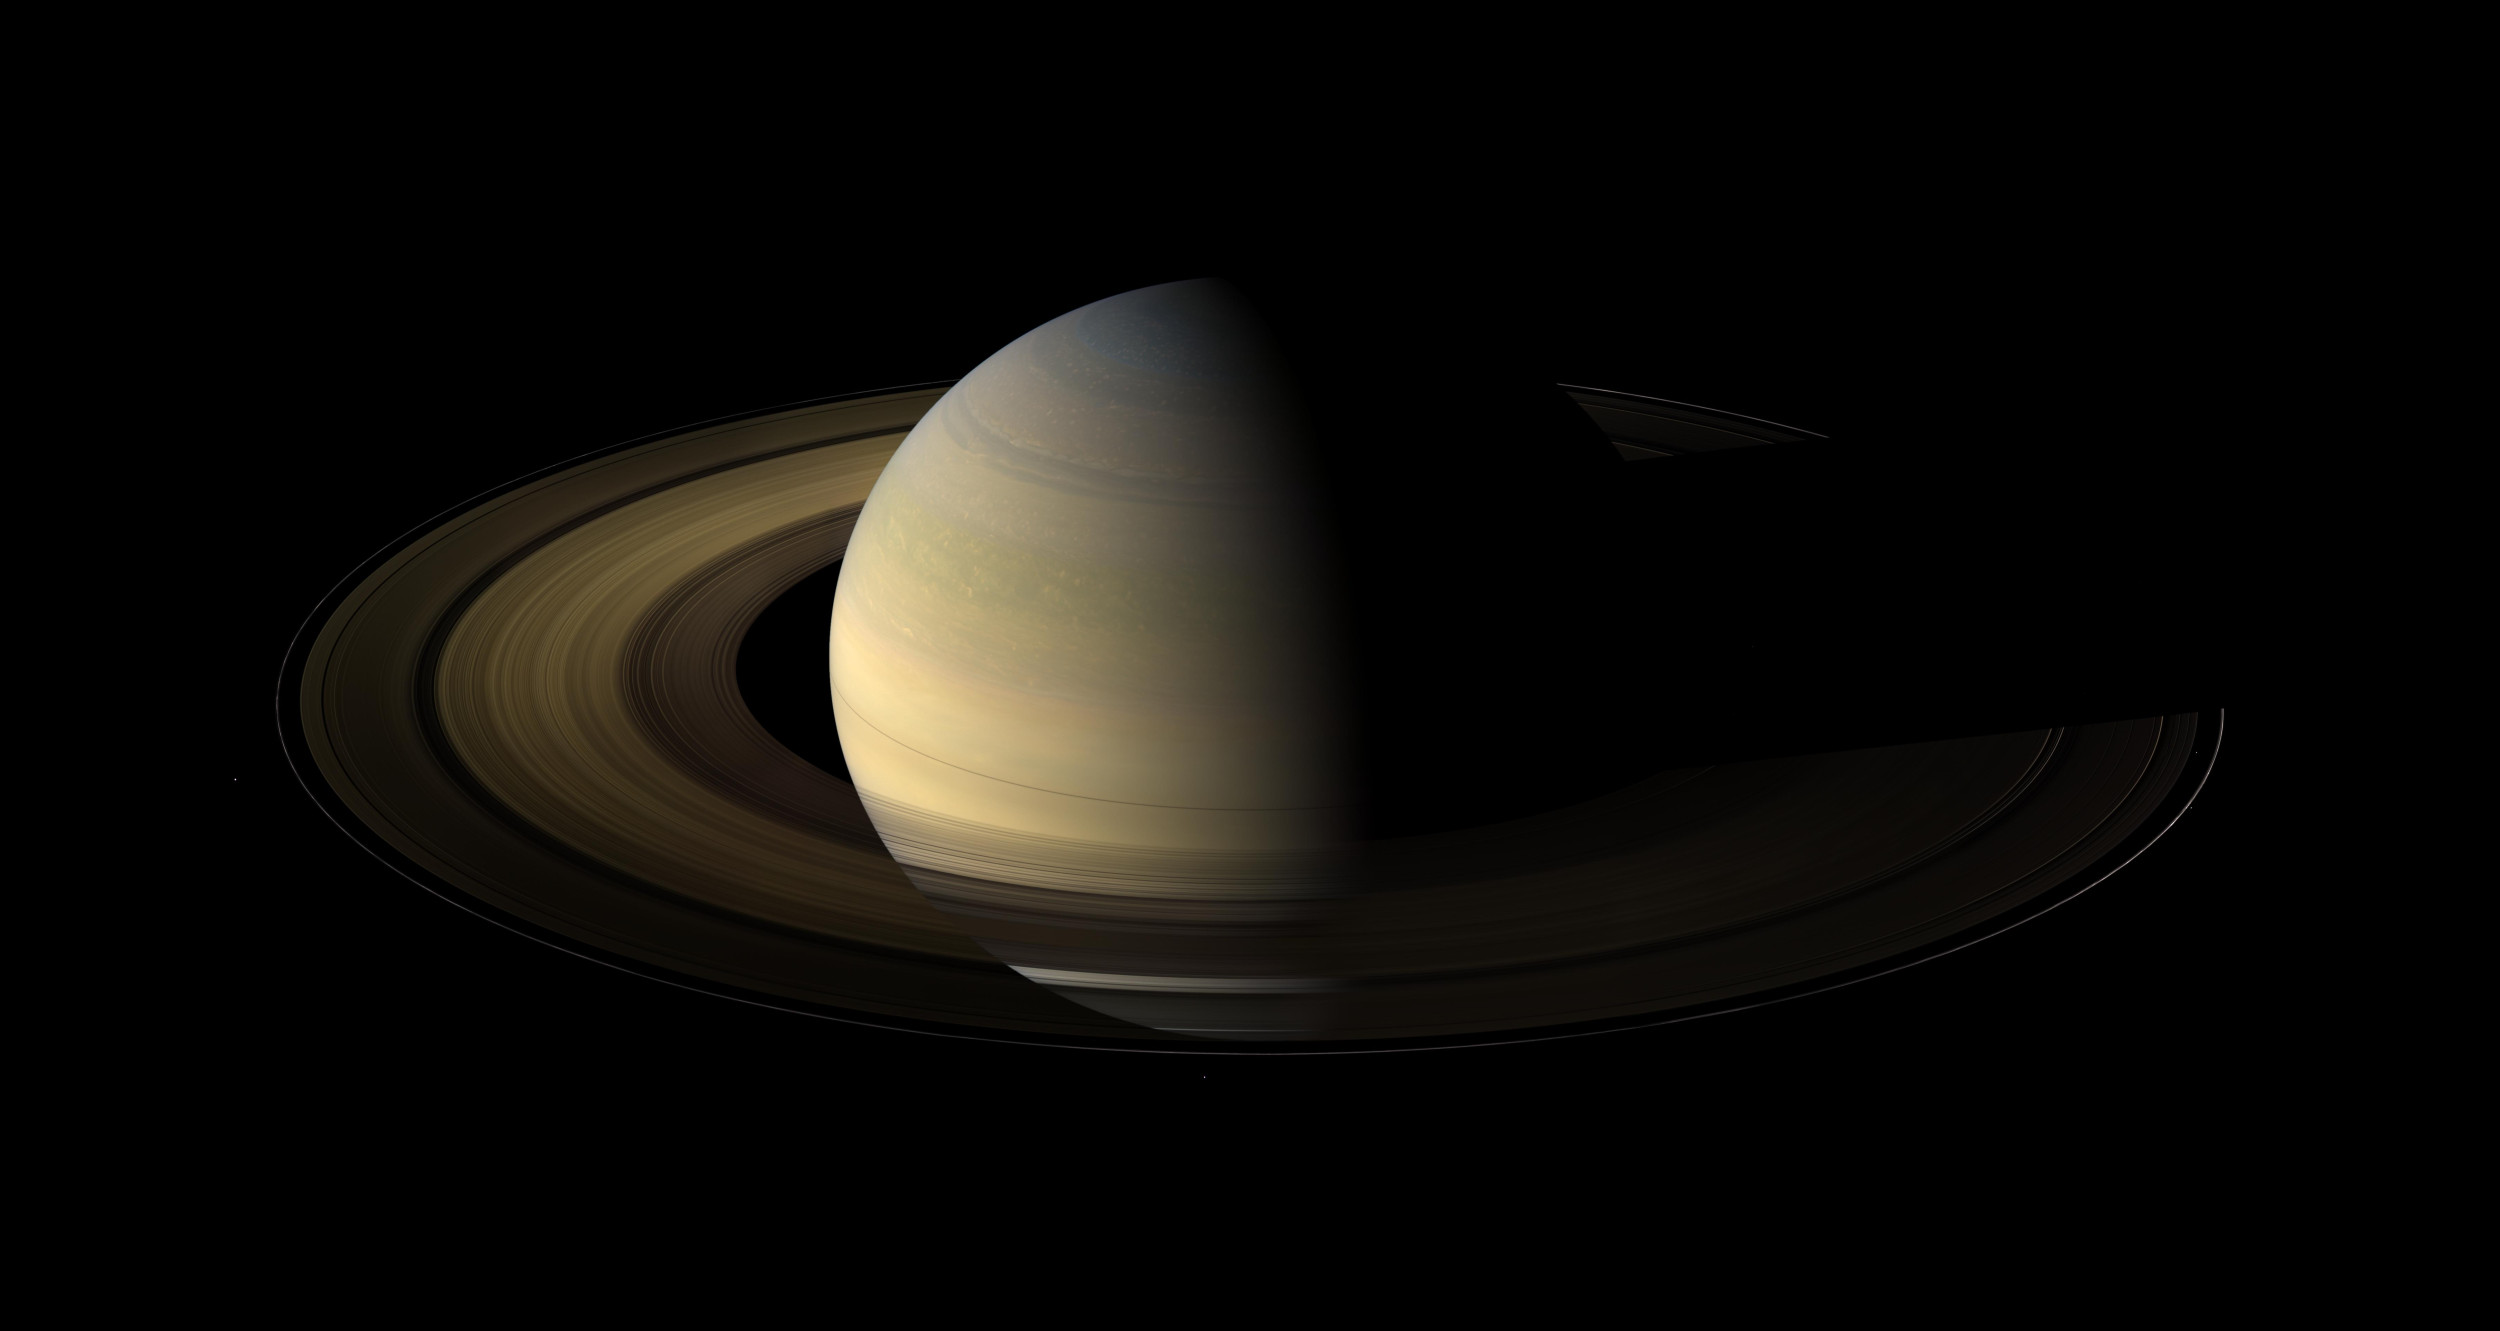 Les anneaux de Saturne disparaîtront en 2025 : voici pourquoi